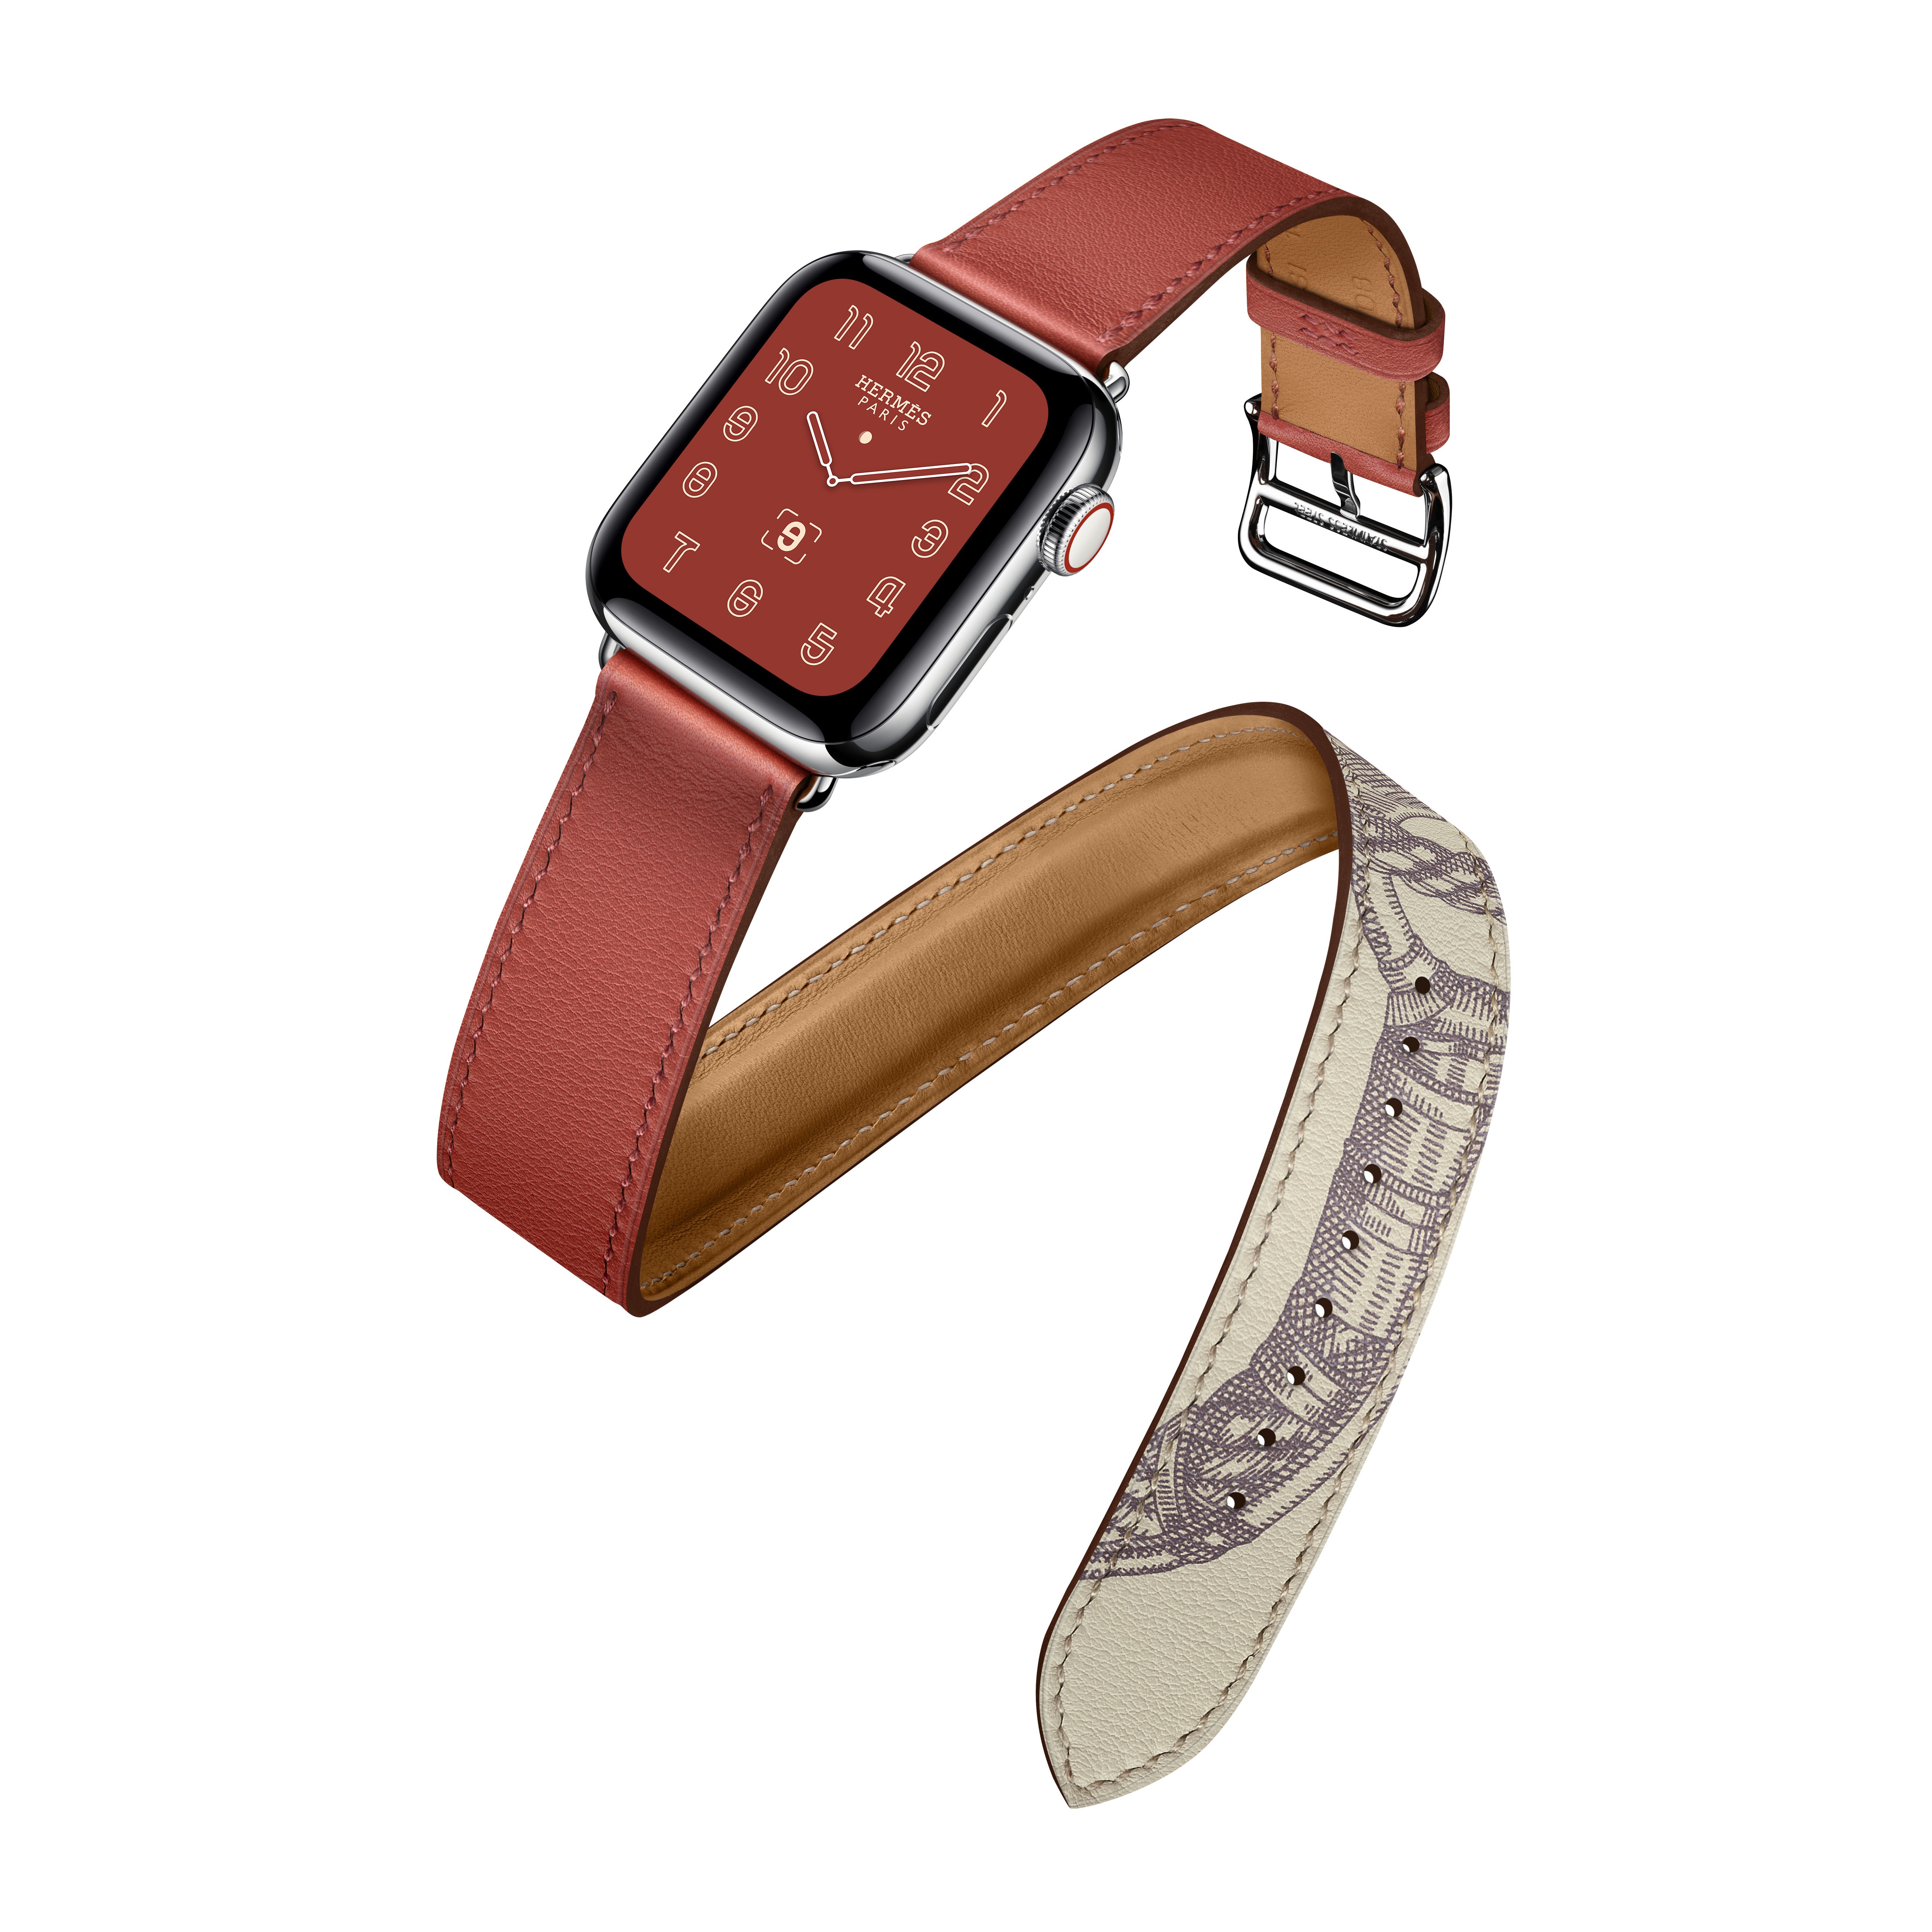 Hermes Series 5 Apple Watch Factory Sale, 54% OFF 